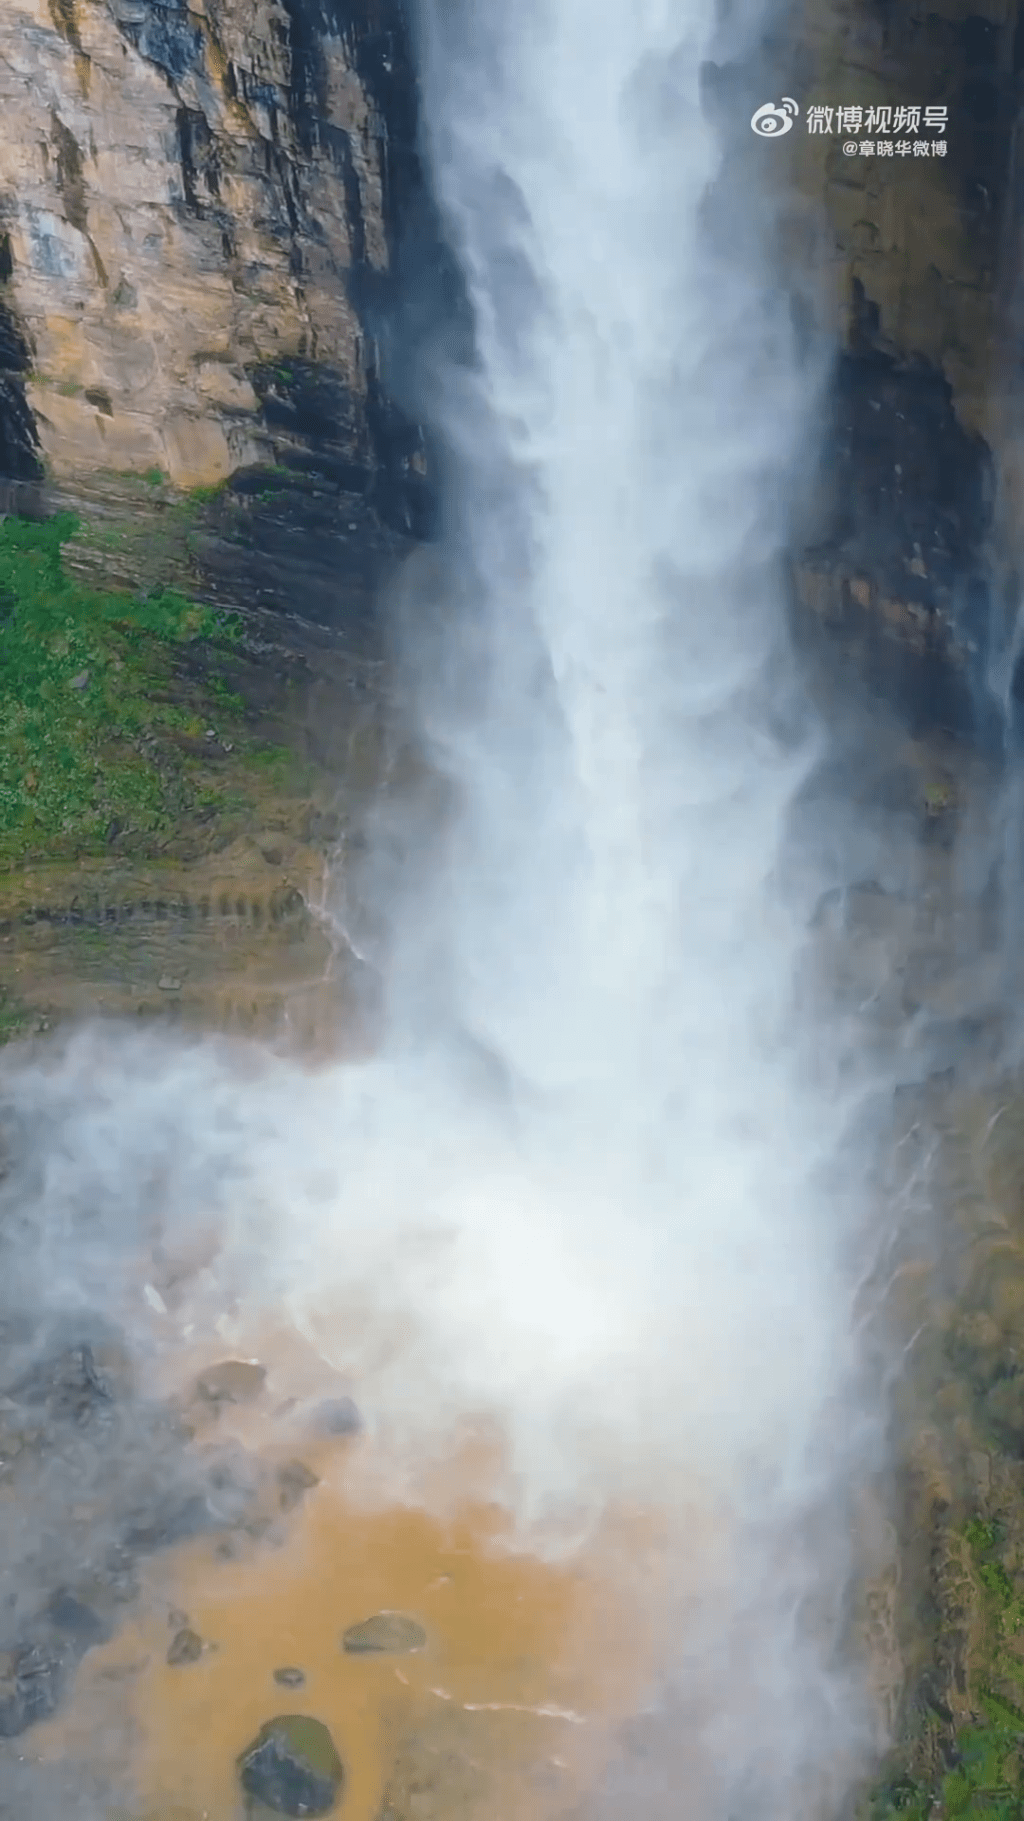 雲台山瀑布美景包括水潭濺起1米多高水花，化成一團水霧，把瀑布罩在朦朦的霧中。